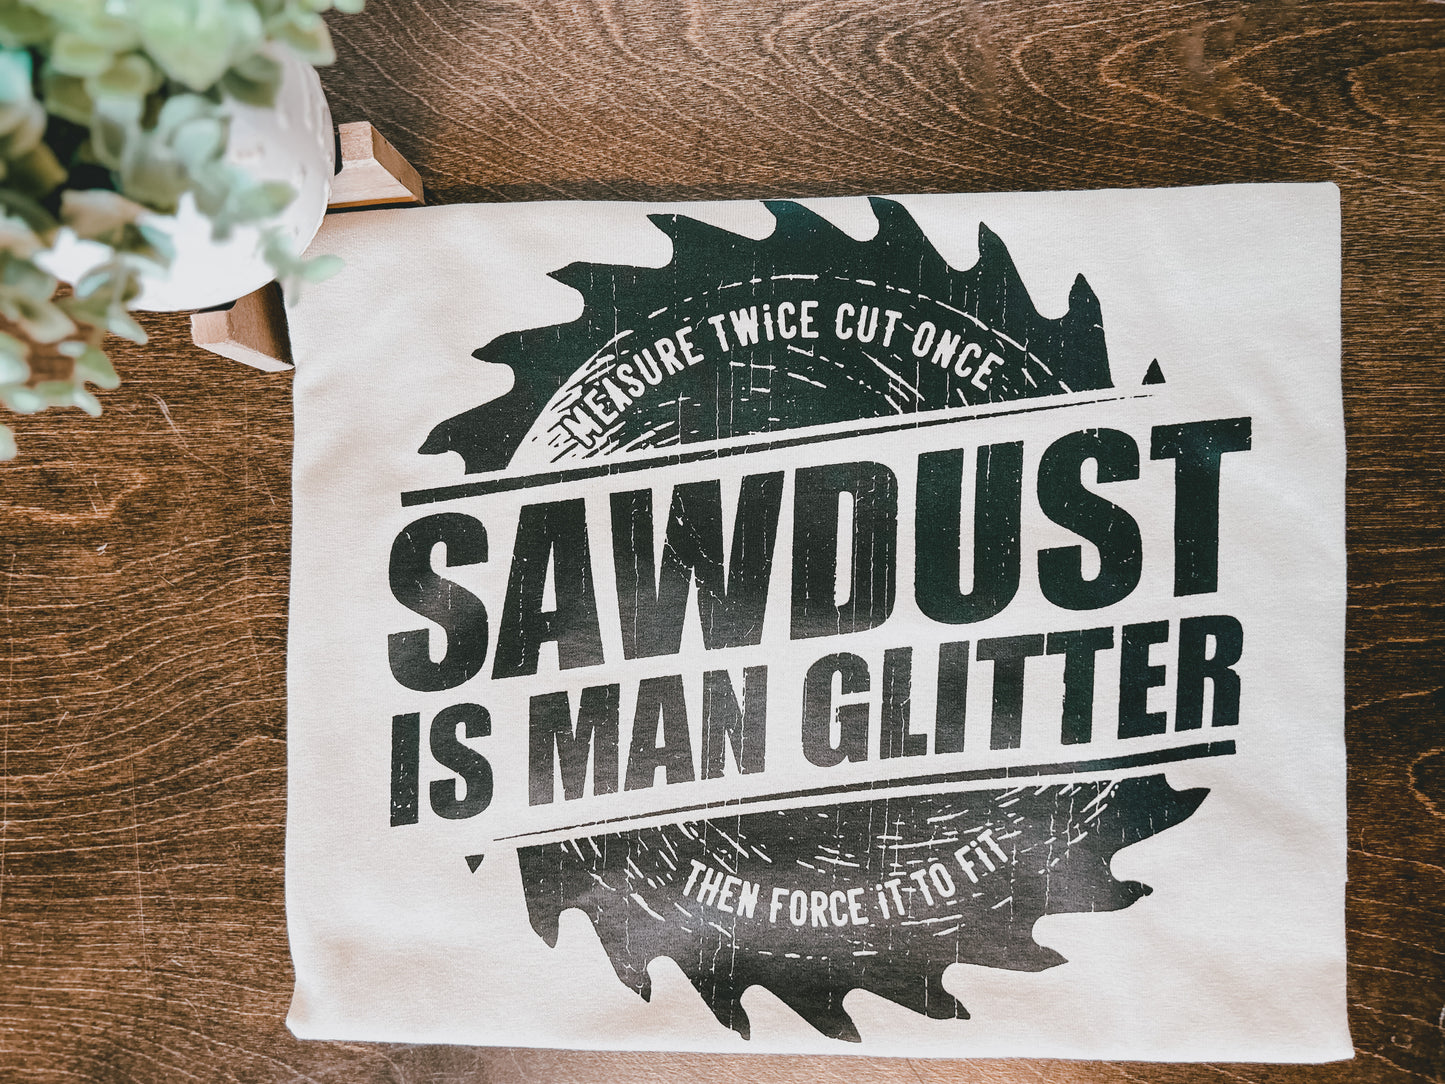 Sawdust is Man Glitter